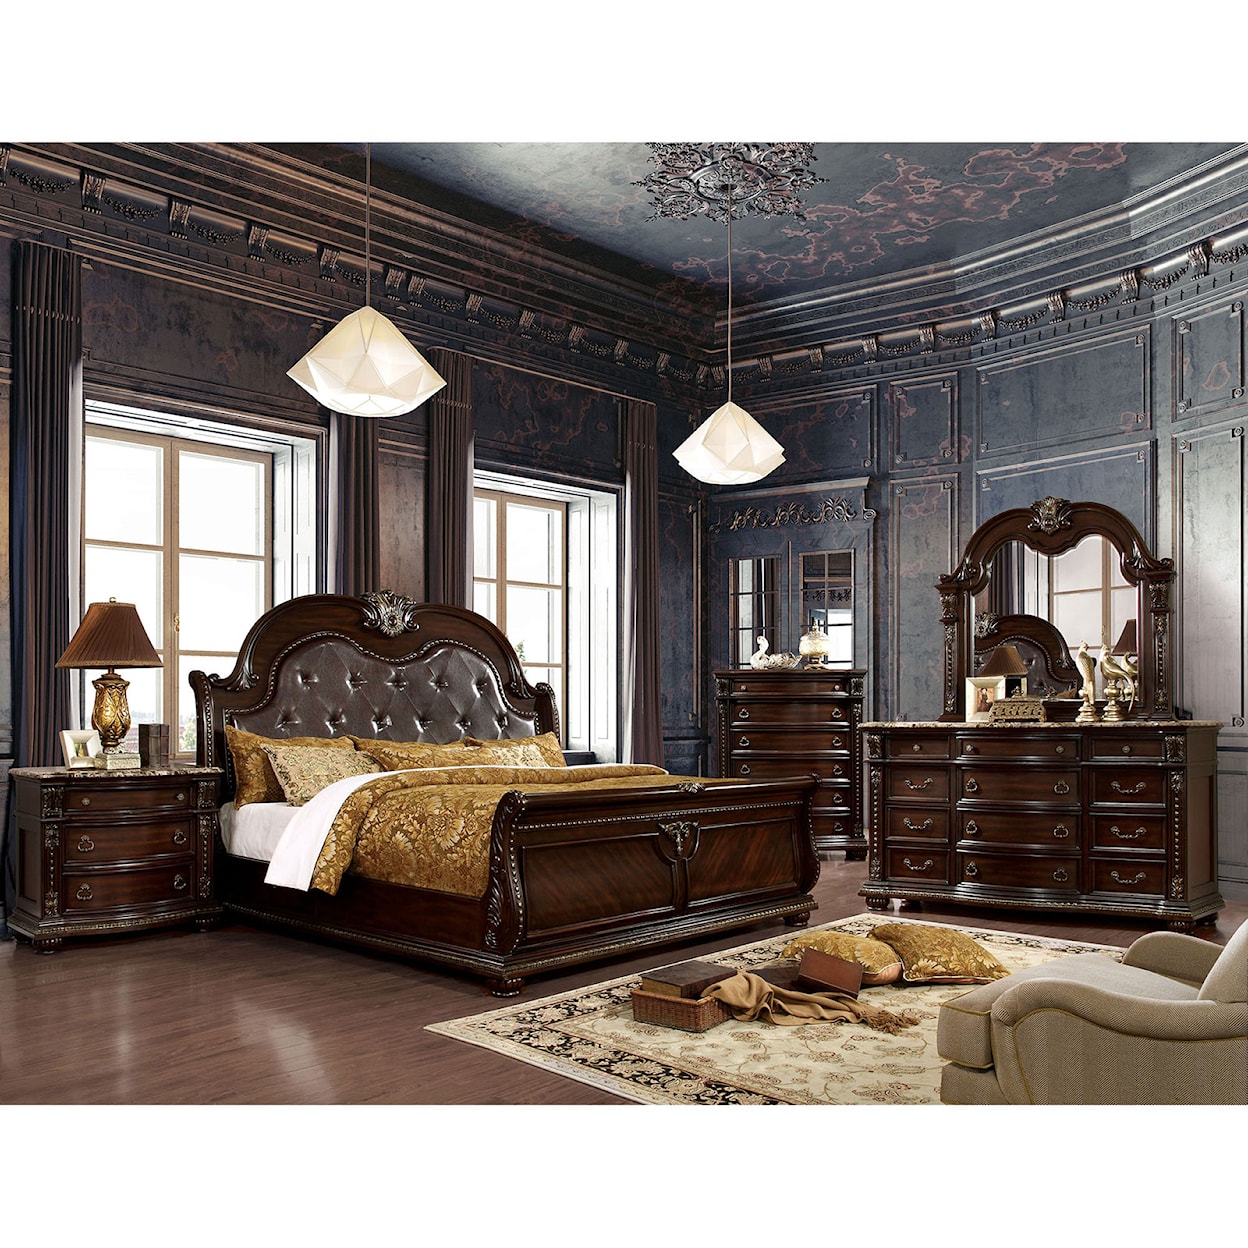 Furniture of America Fromberg 5-Piece Queen Bedroom Set